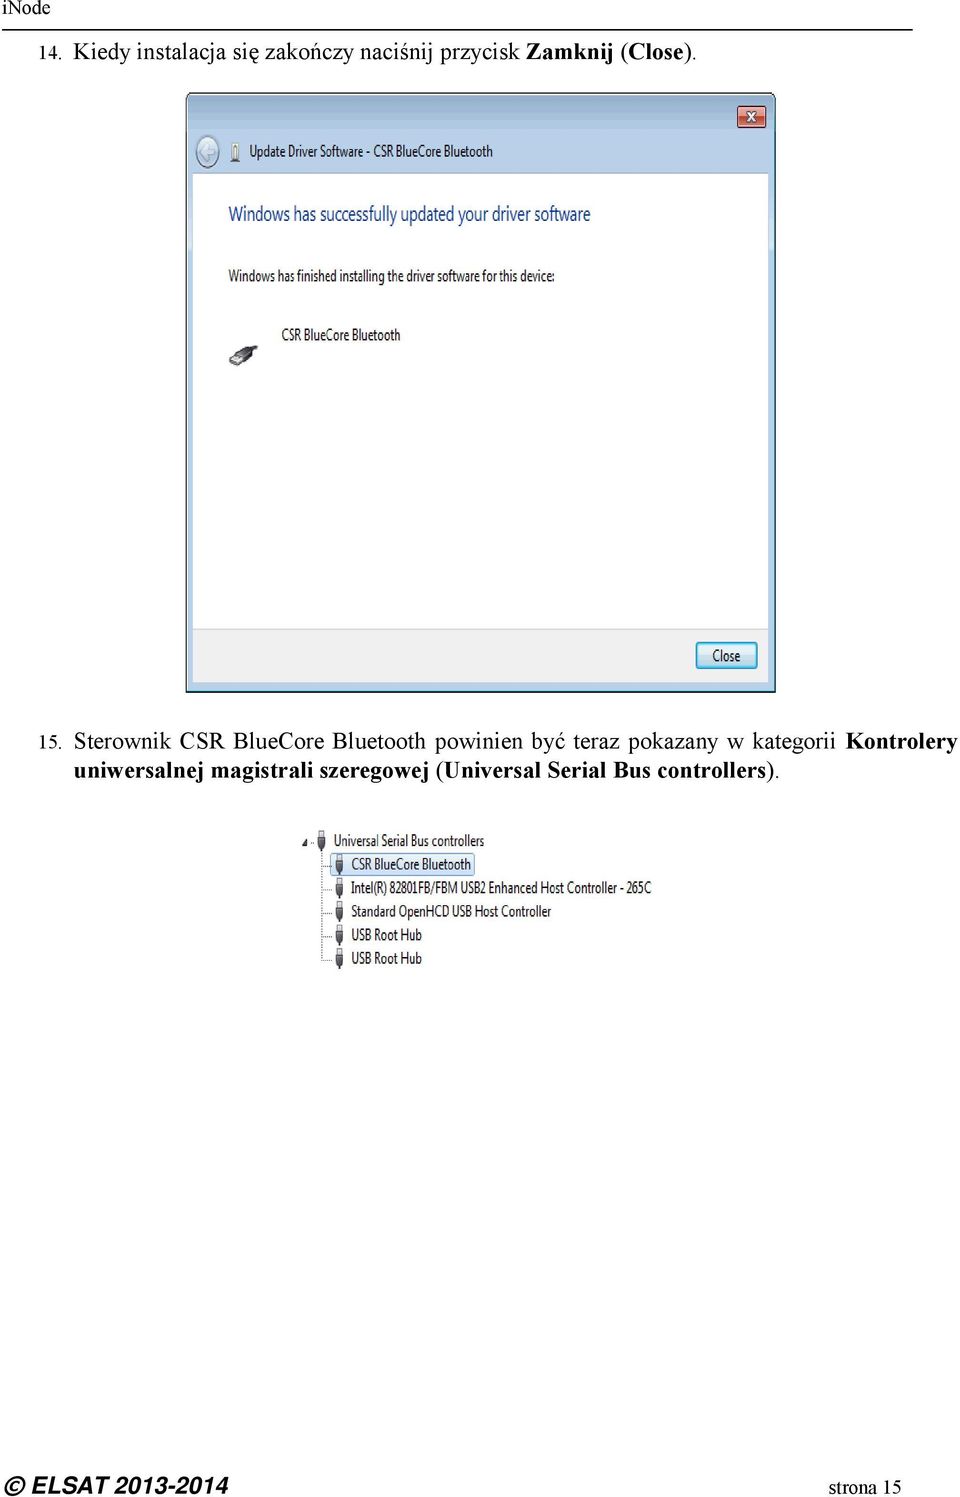 Sterownik CSR BlueCore Bluetooth powinien być teraz pokazany w